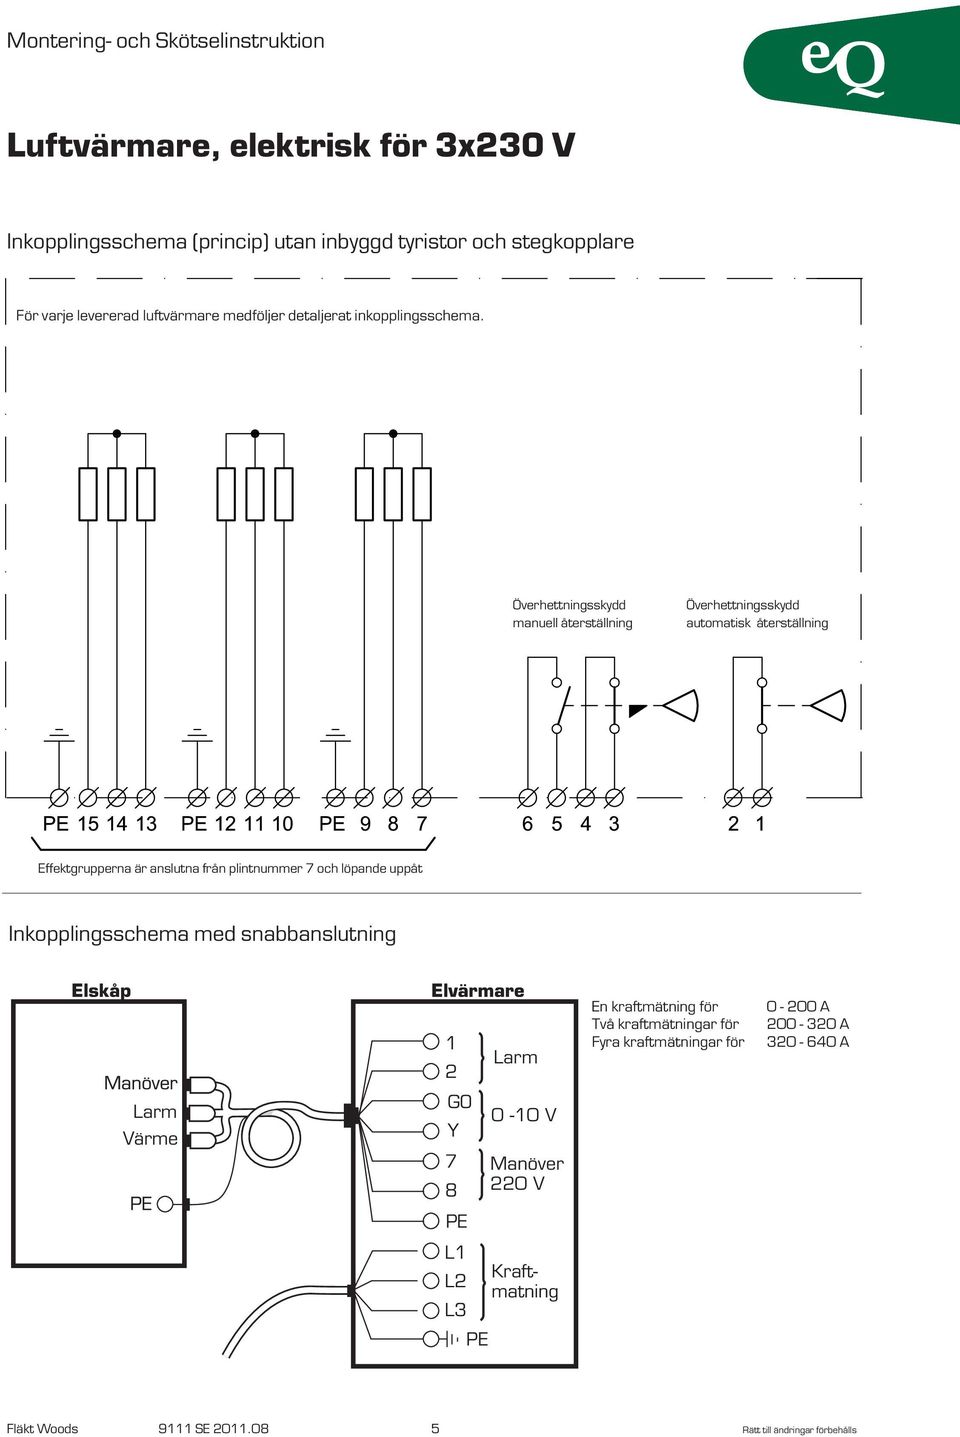 löpande uppåt Inkopplingsschema med snabbanslutning 1 2 Larm En kraftmätning för Två kraftmätningar för Fyra kraftmätningar för 0-200 A